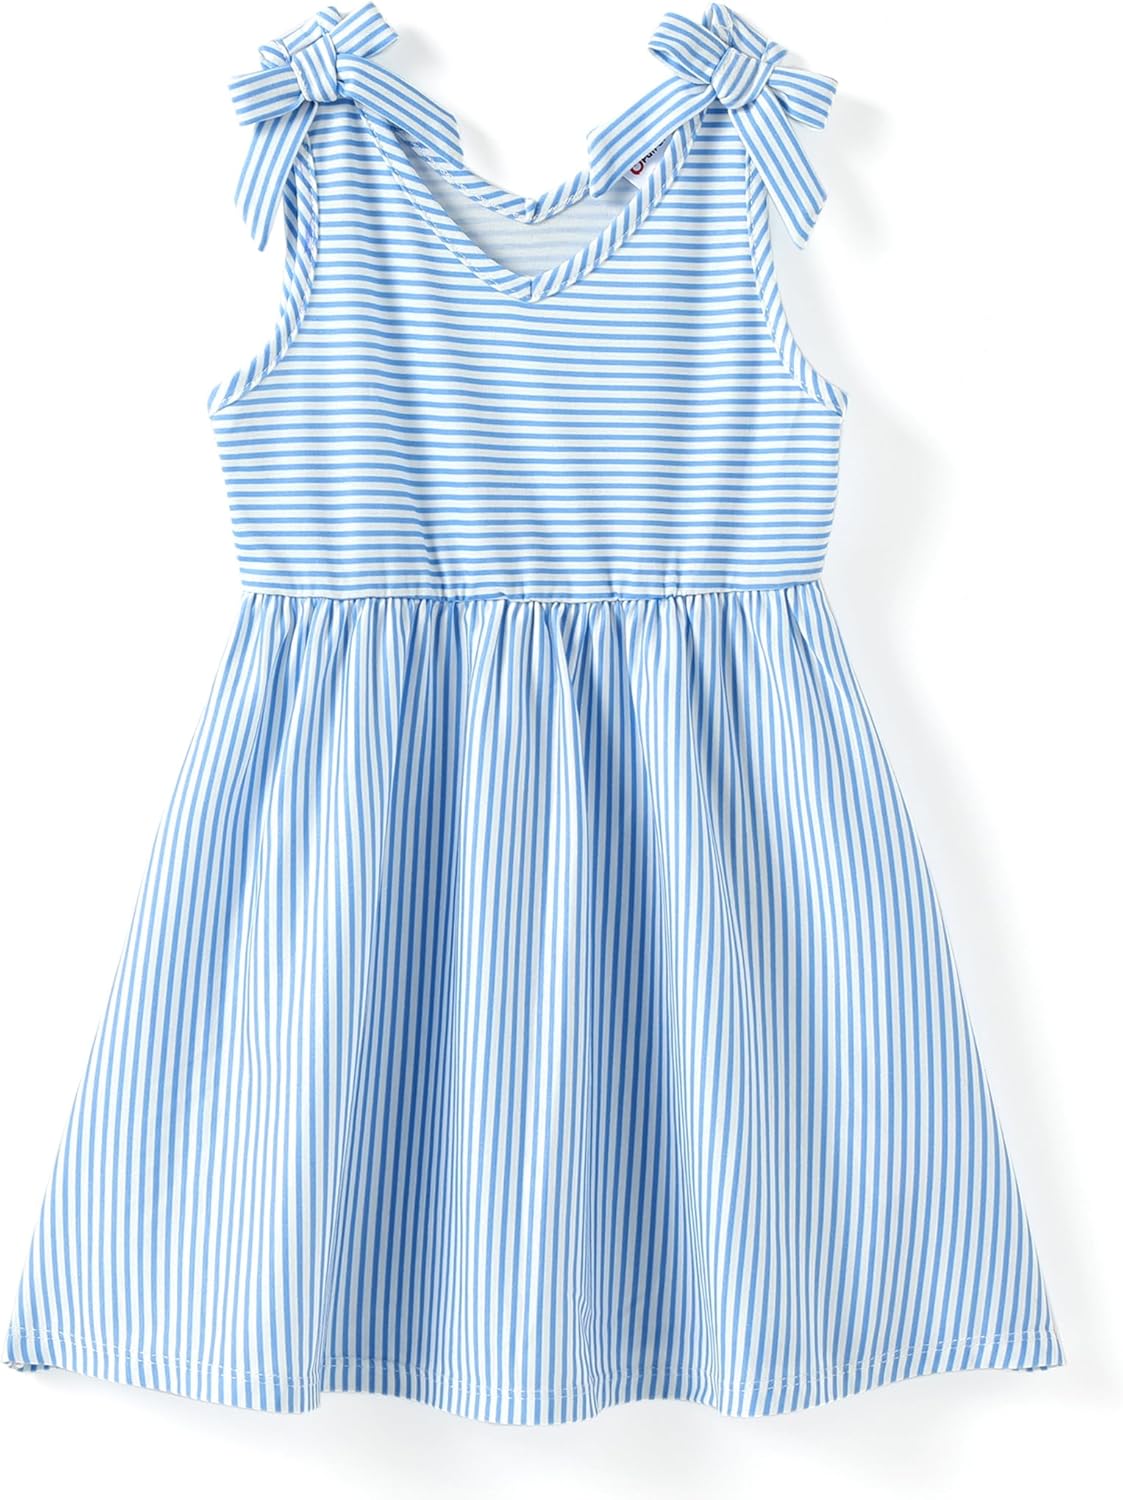 PATPAT Toddler Kid Girls Summer Dress Sleeveless Bow Shoulder Sling Dress Swing Sundress